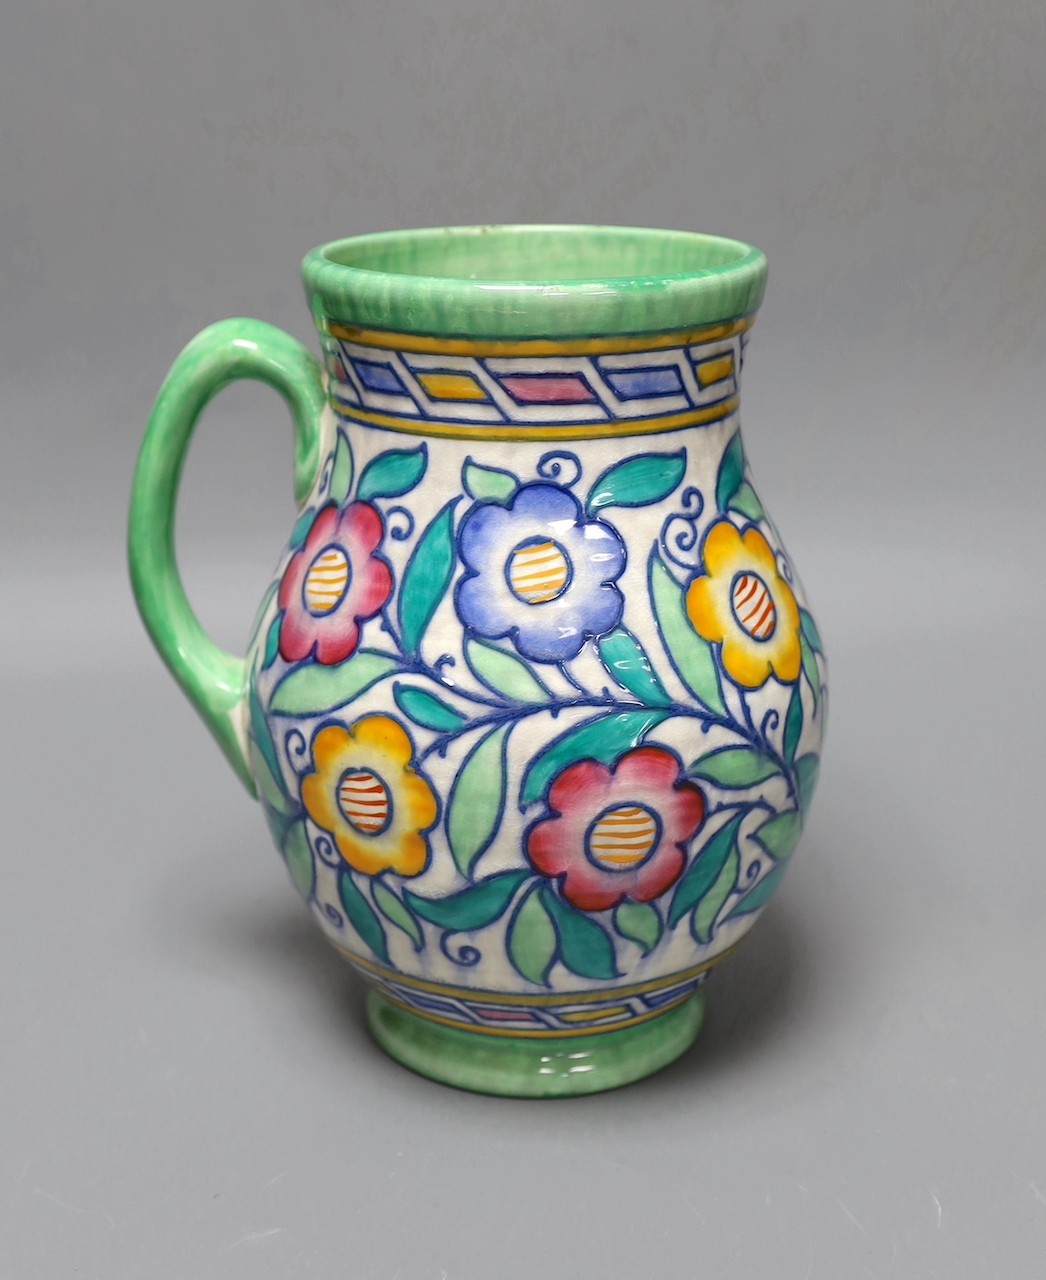 A Charlotte Rhead jug, 22 cms high.